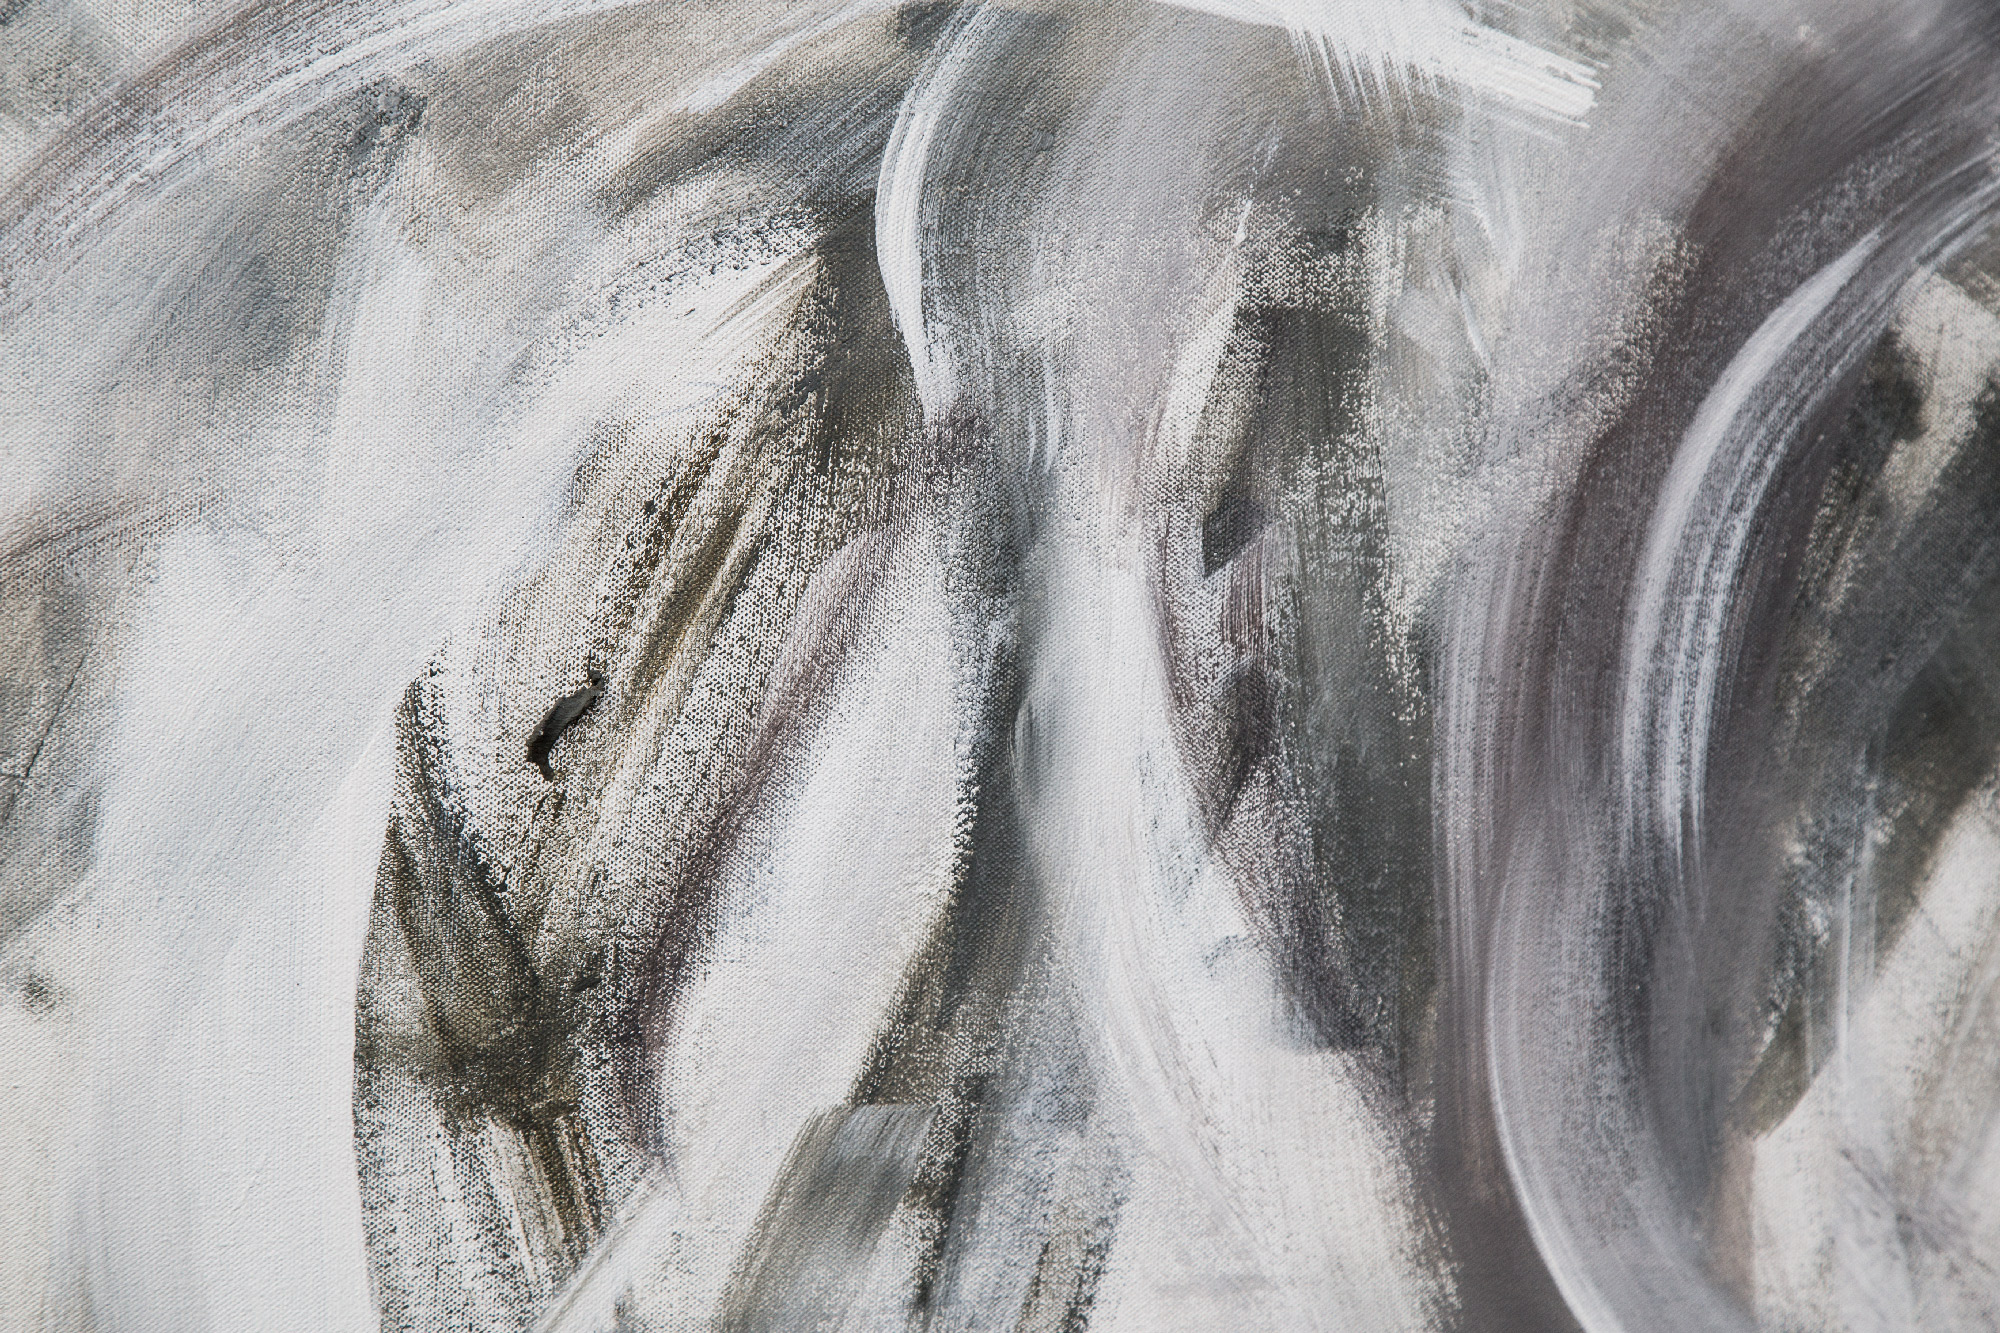 Oil on Canvas, with textures of concrete in grey colors -Ornella Gallo Di Fortuna Art